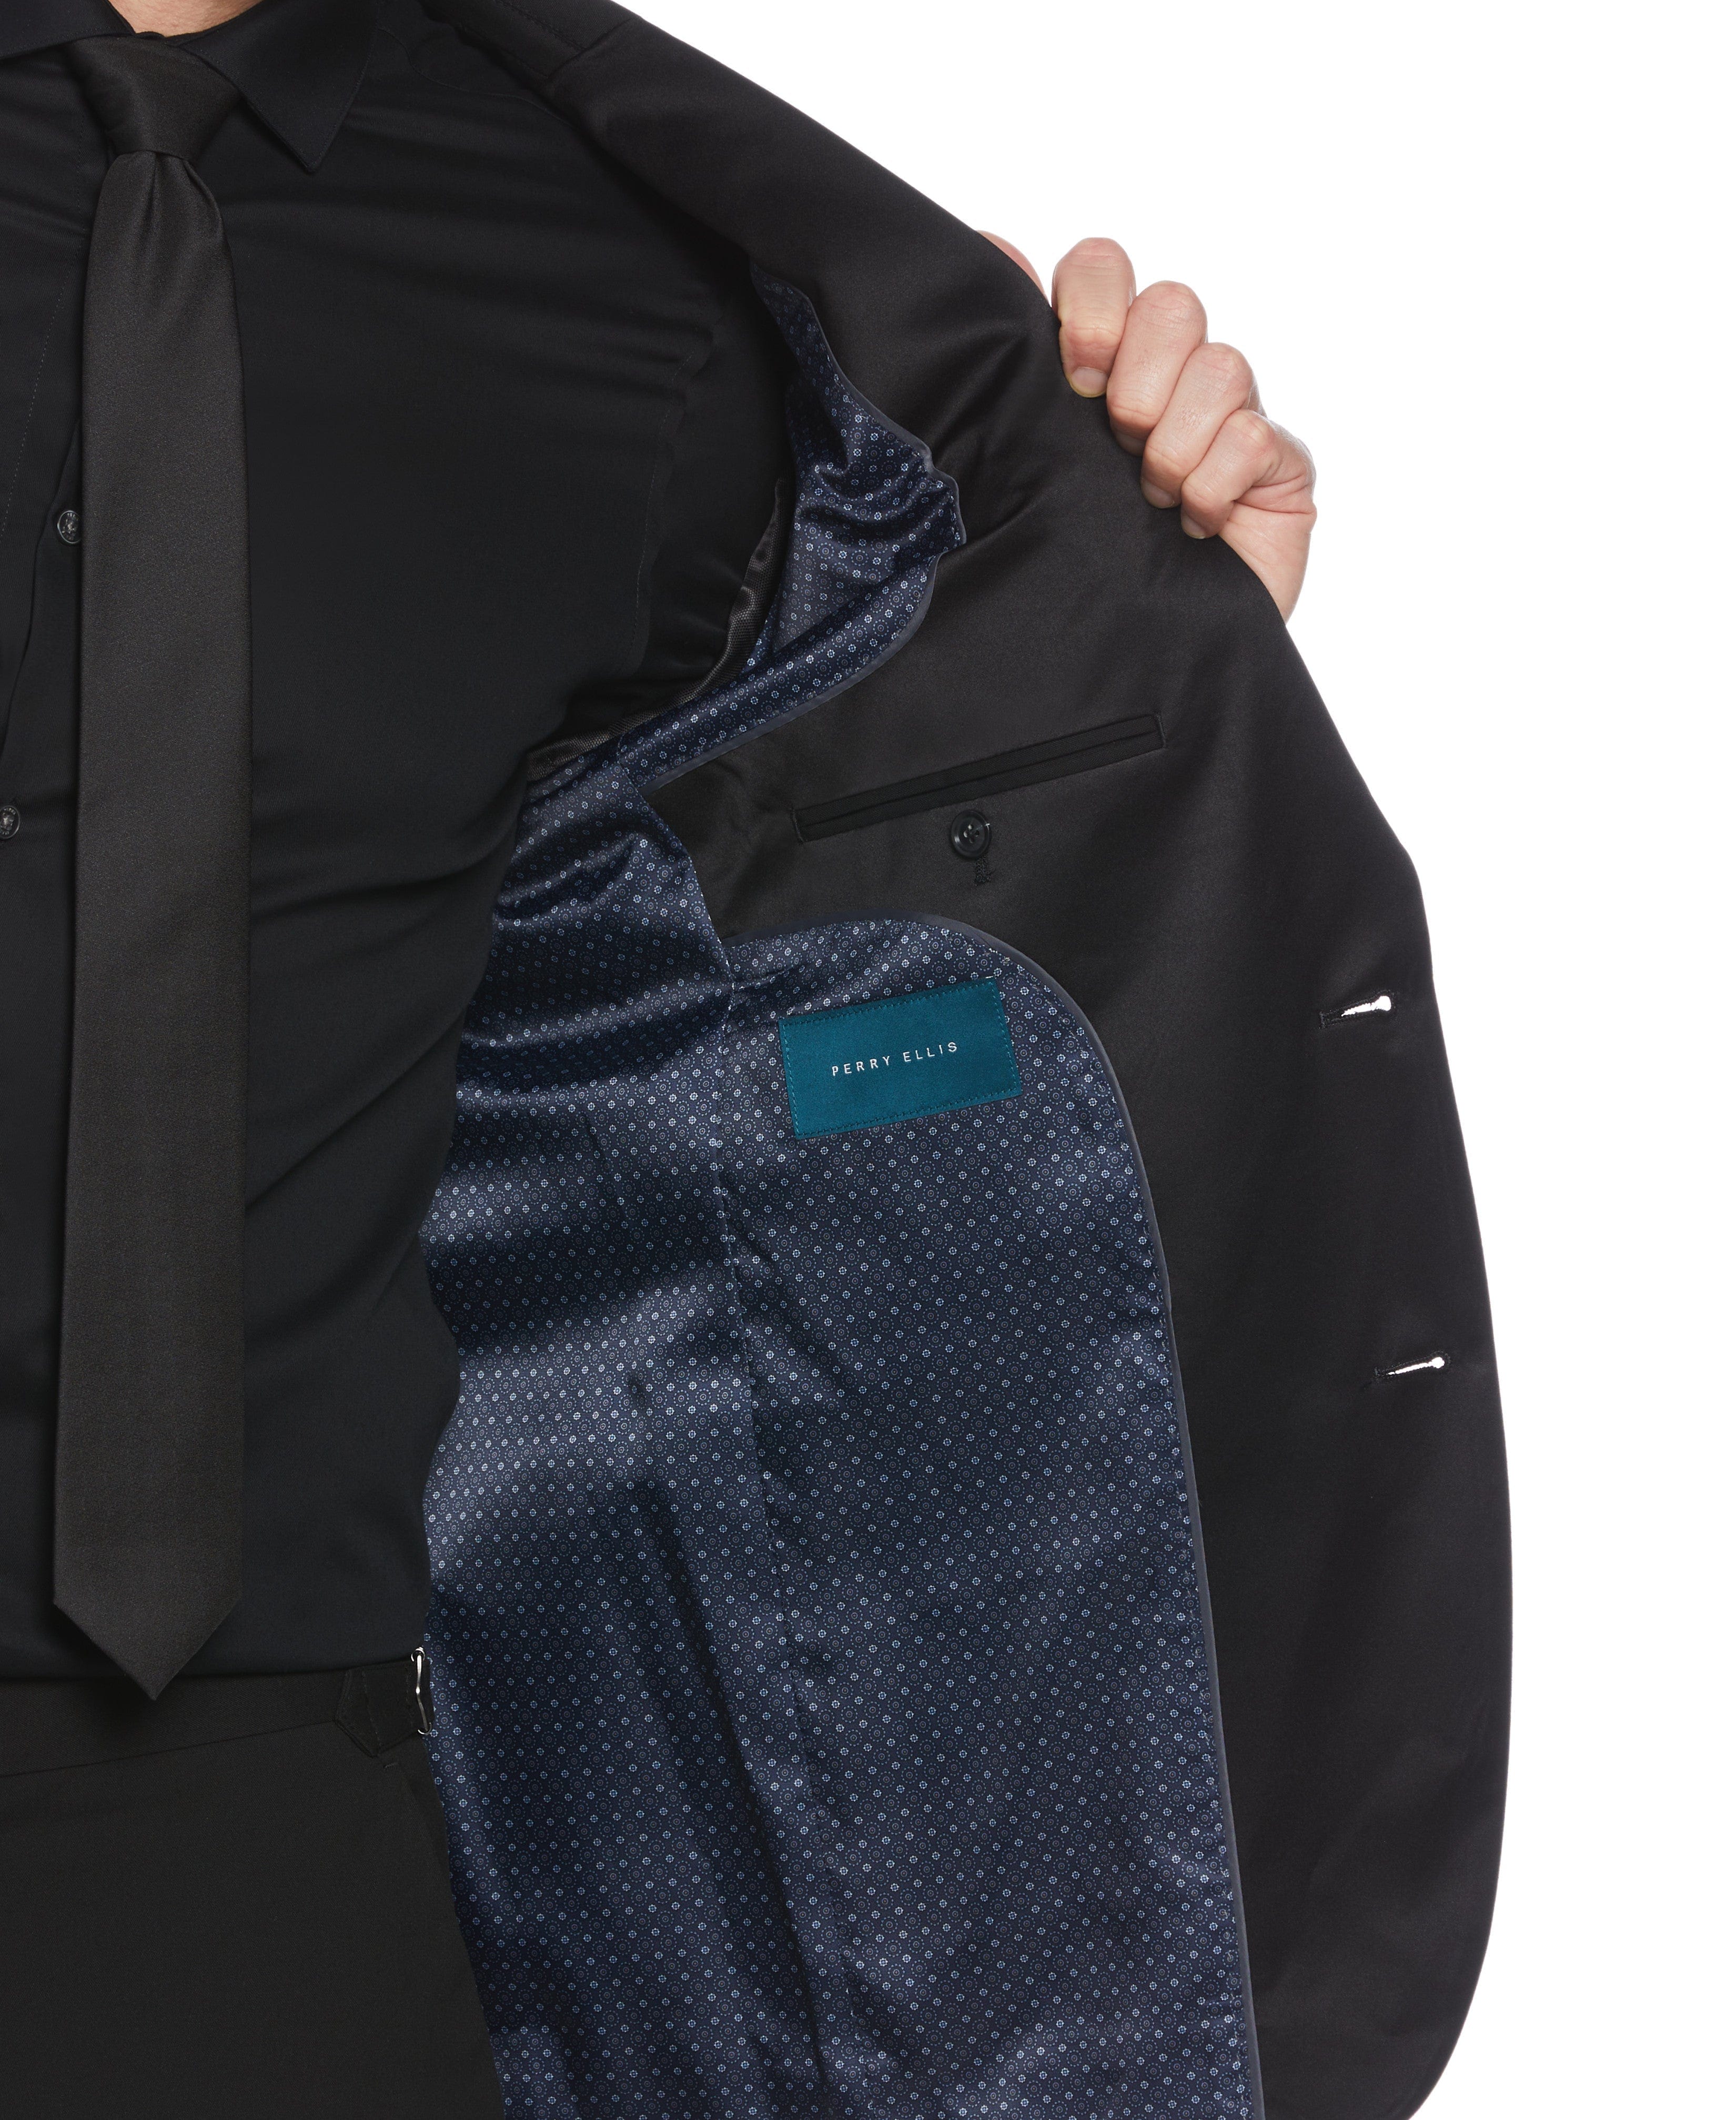 Men's Tuxedo Jacket with Satin Piecing | Perry Ellis